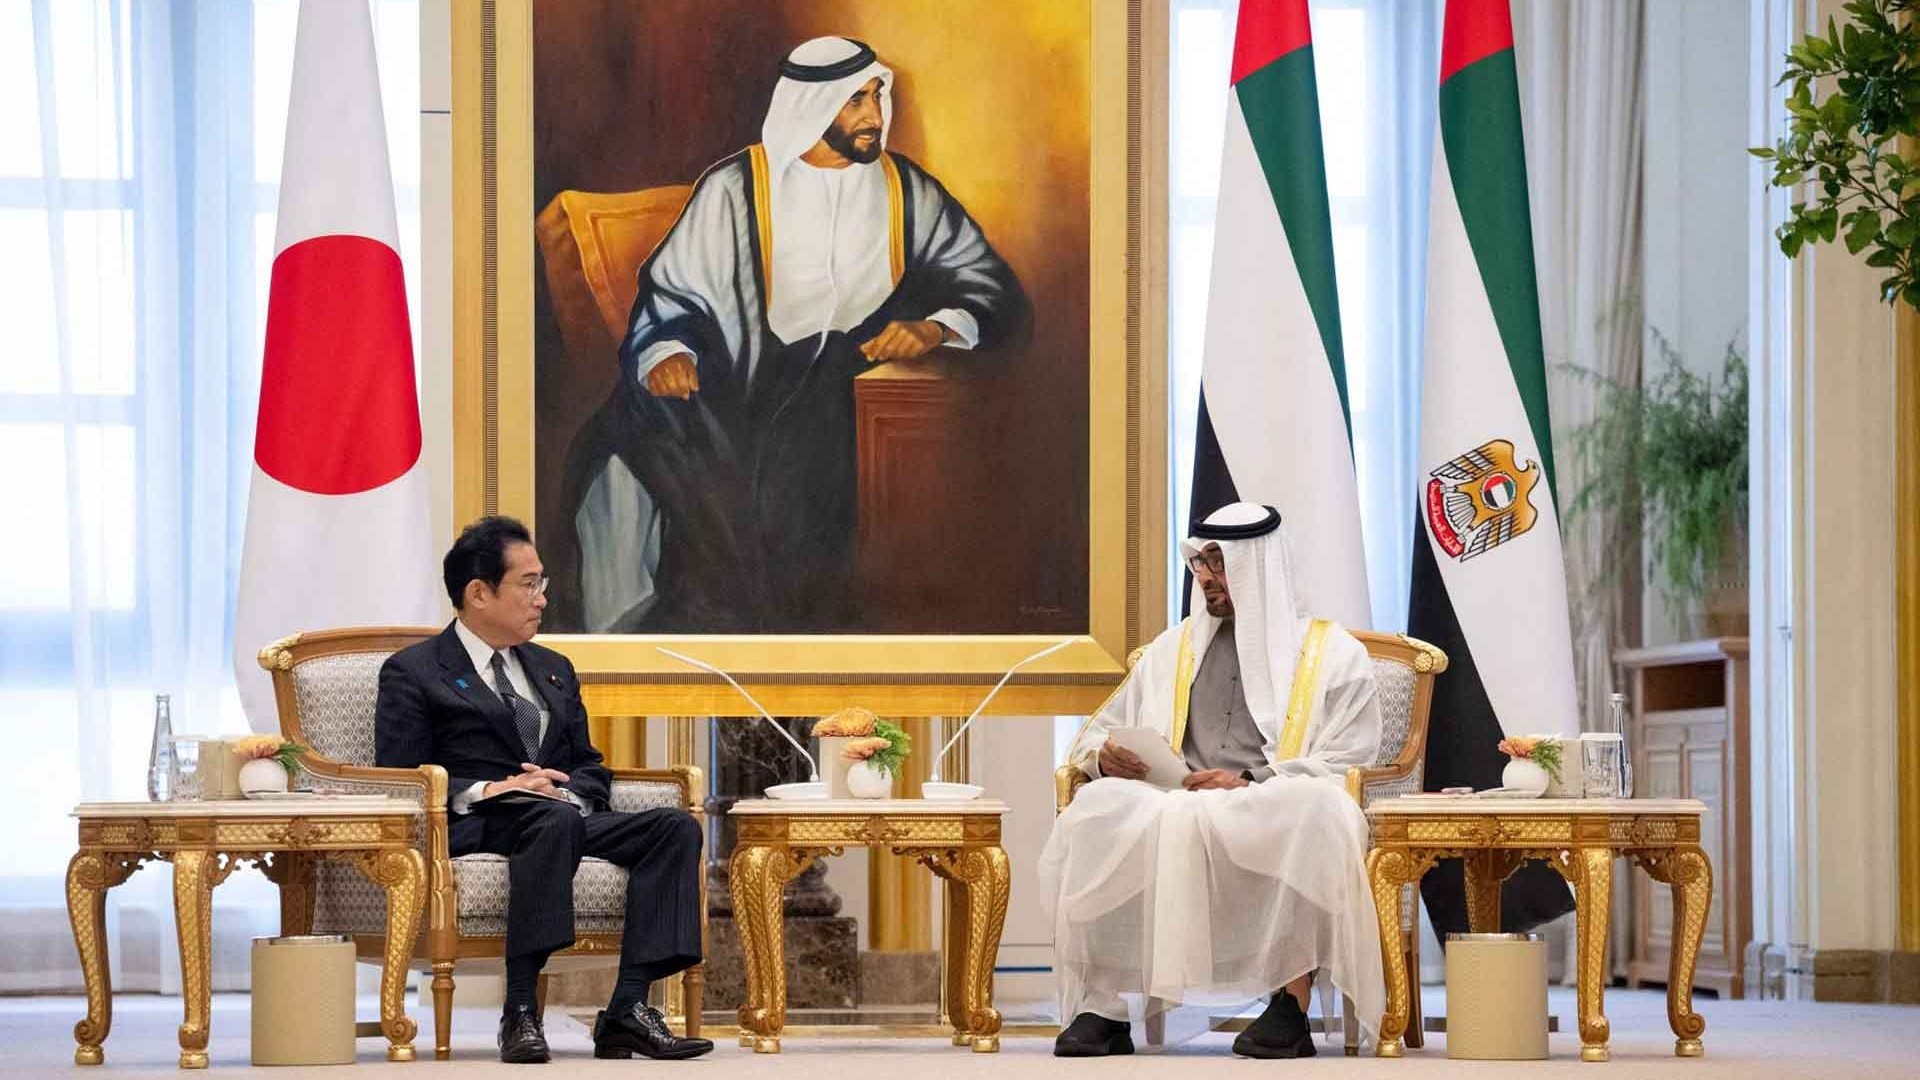 Thủ tướng Nhật Bản thăm Trung Đông: Chuyến công du dầu lửa